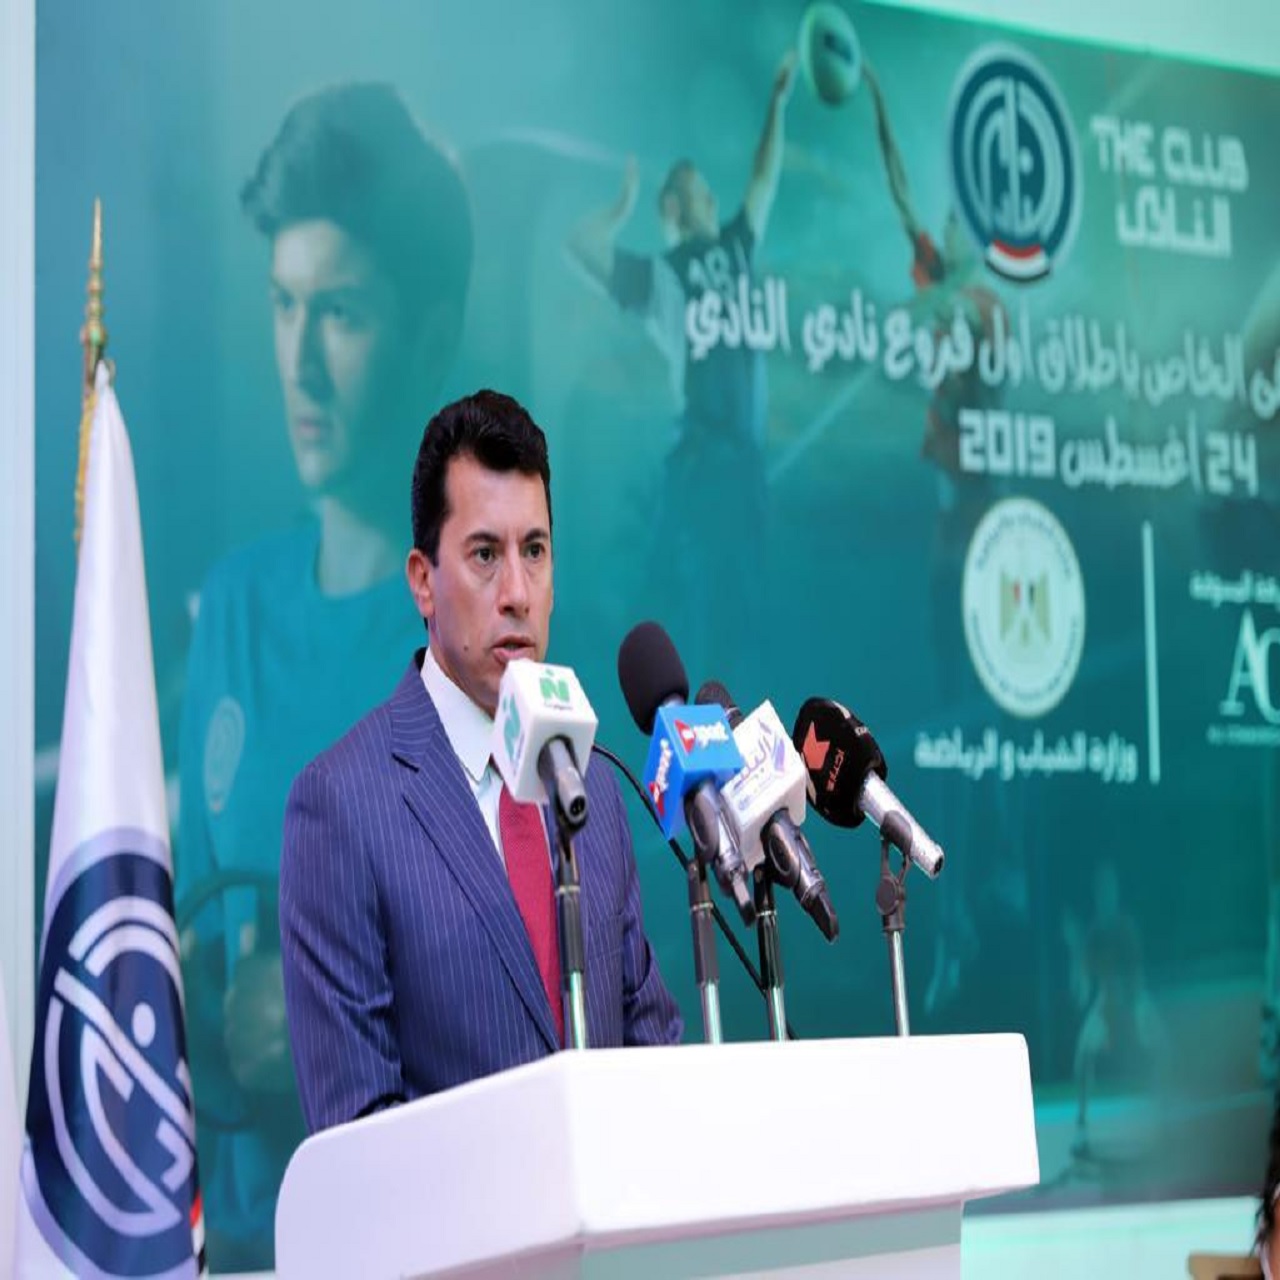 وزير الرياضة المصري يشهد إطلاق الفرع الأول لسلسلة أندية النادي